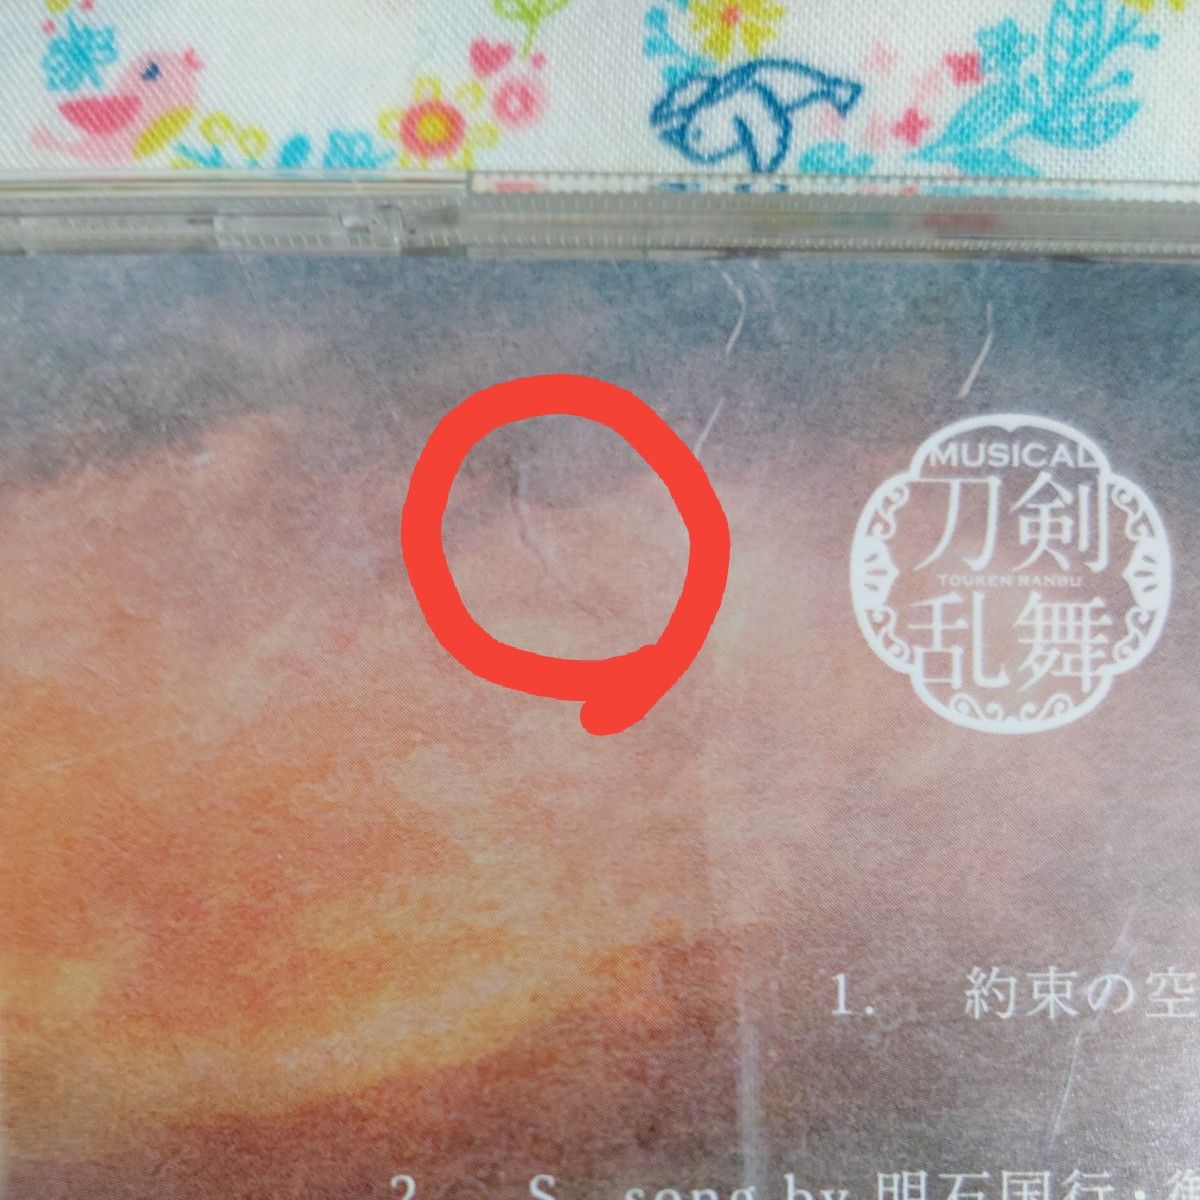  約束の空 (プレス限定盤A) CD 刀剣男士 formation of 葵咲